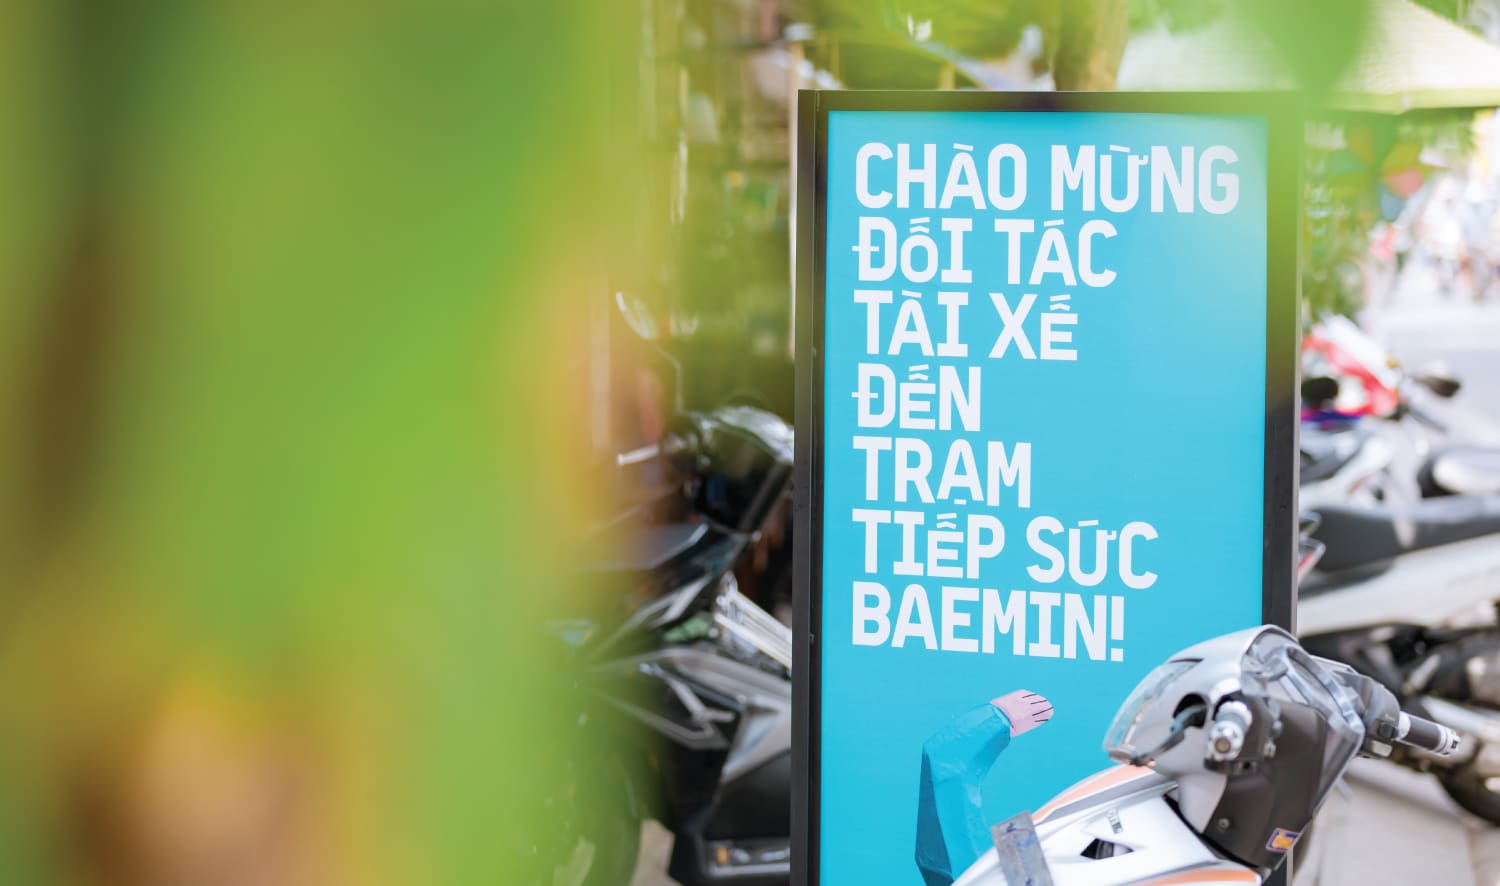 Trạm Tiếp Sức Baemin Việt Nam2